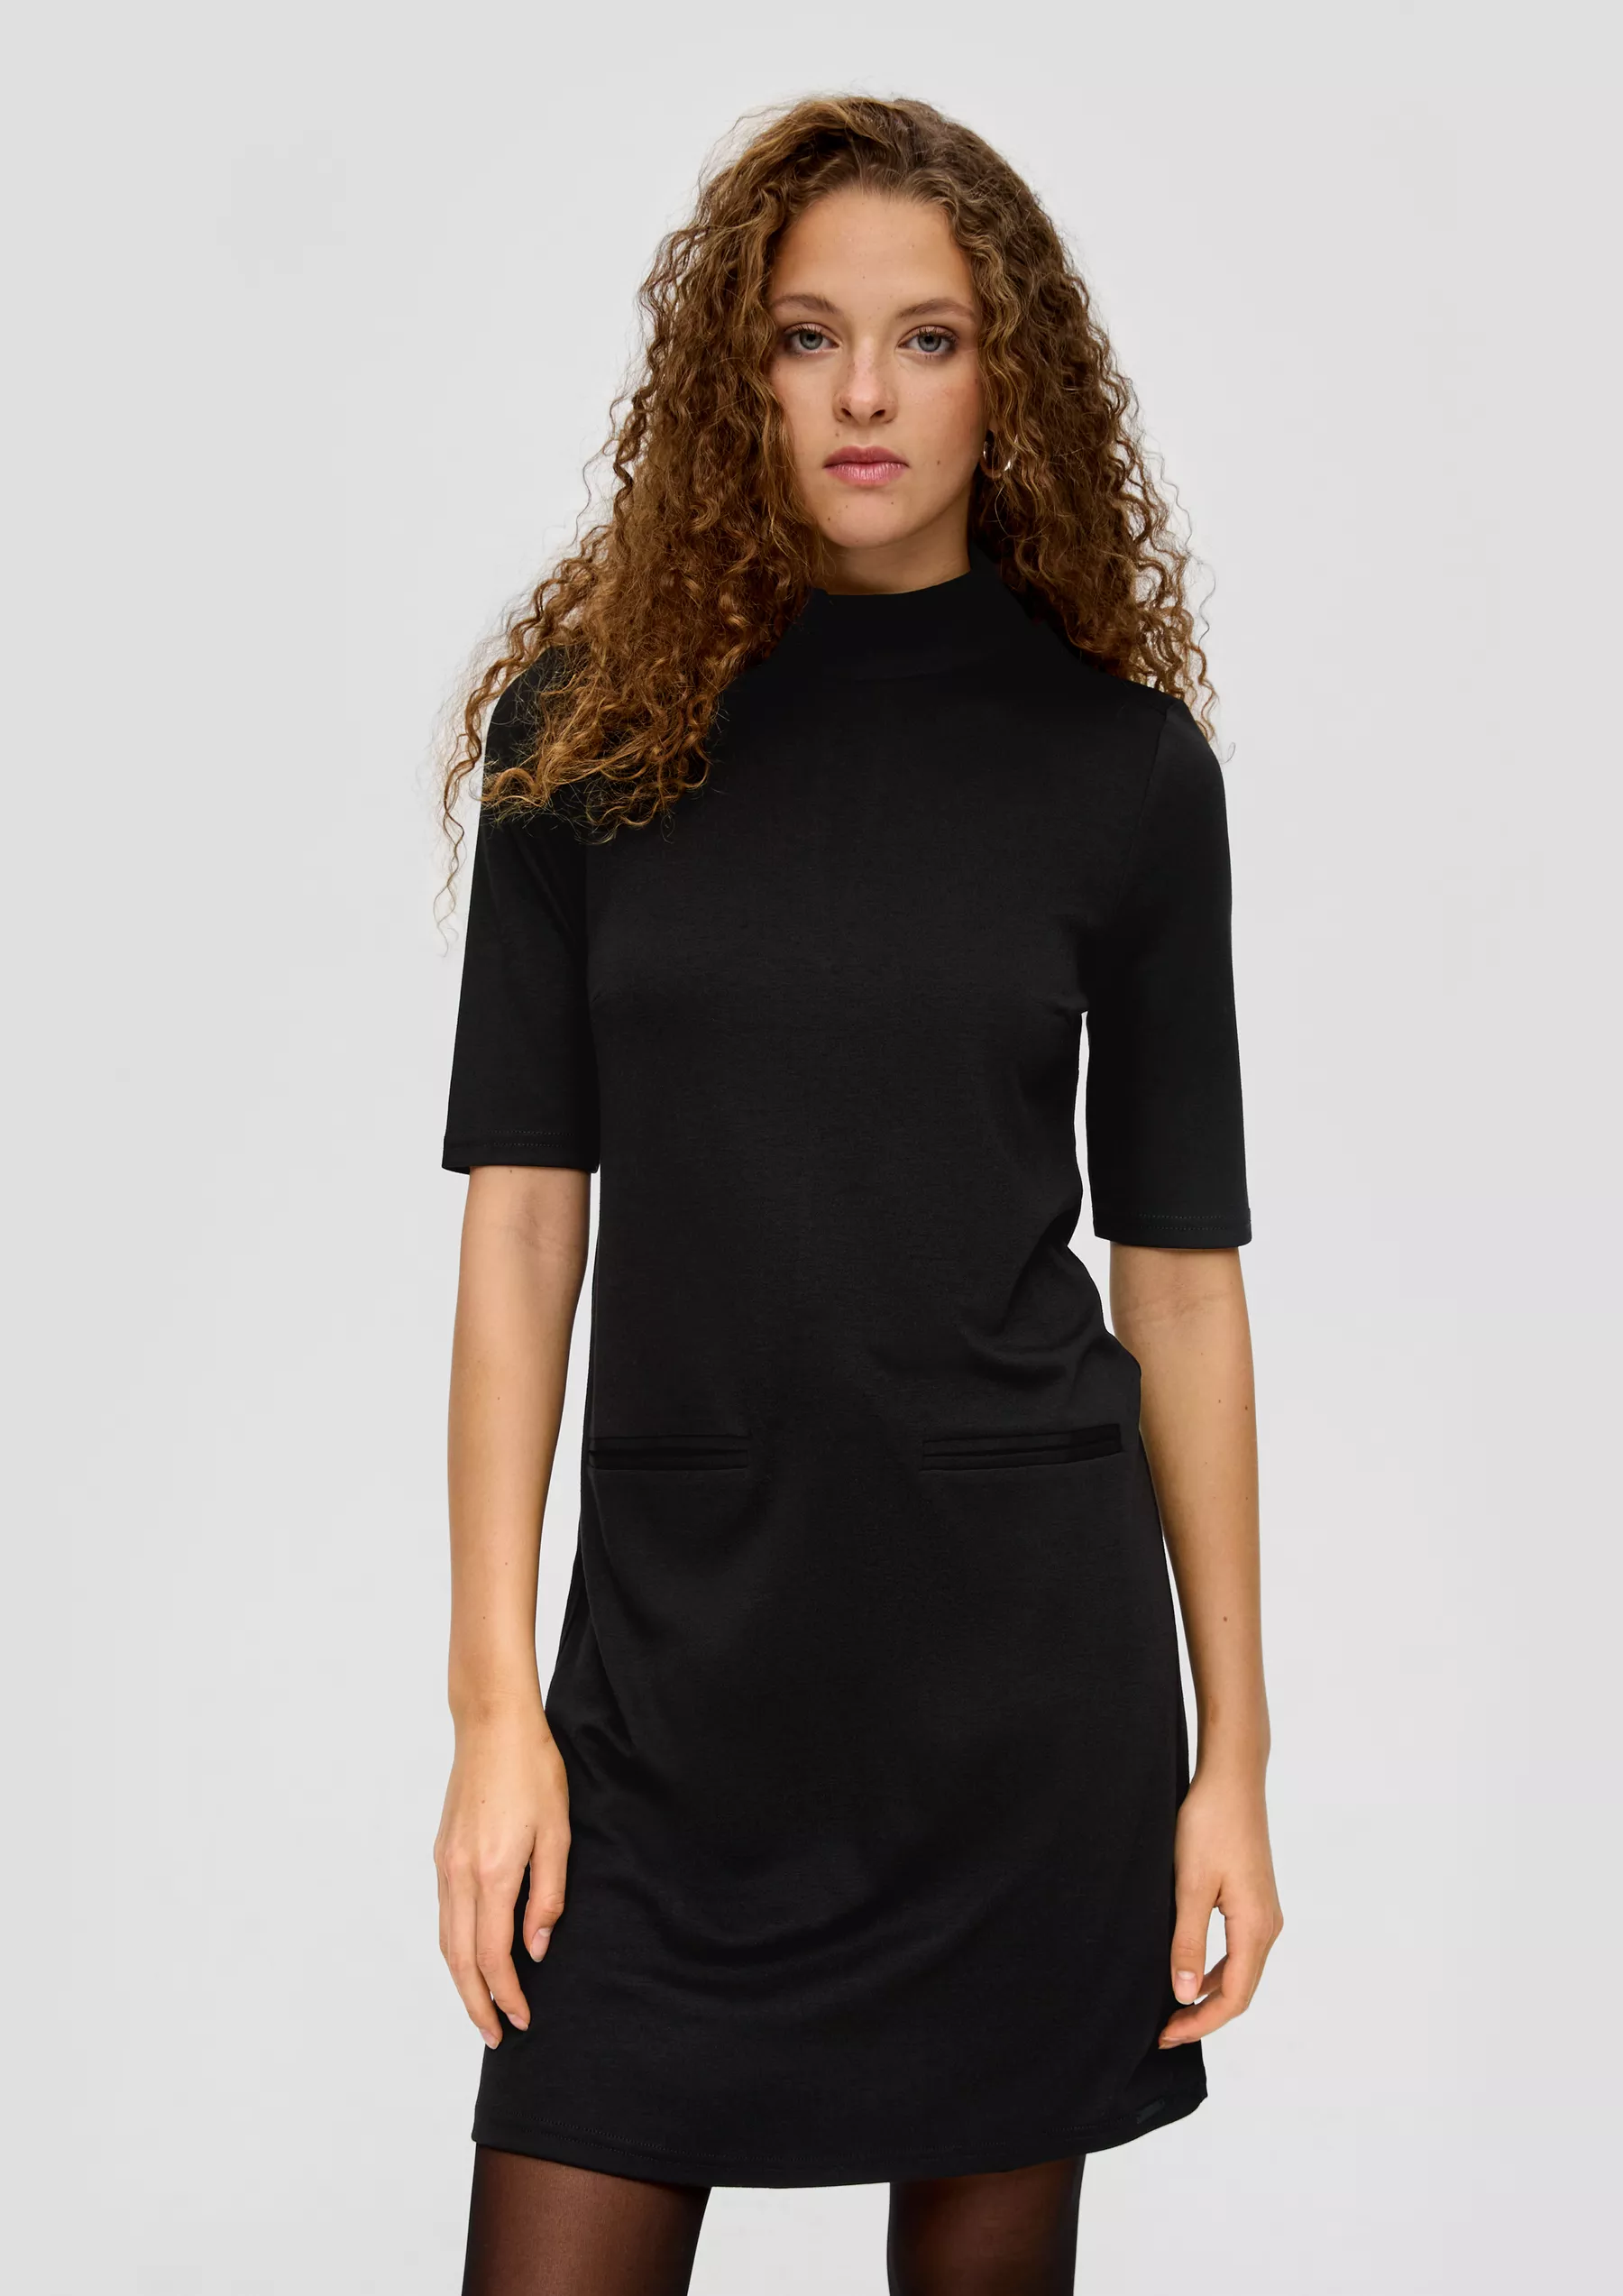 Платье женское QS by s.Oliver 2137462/9999 черное XL